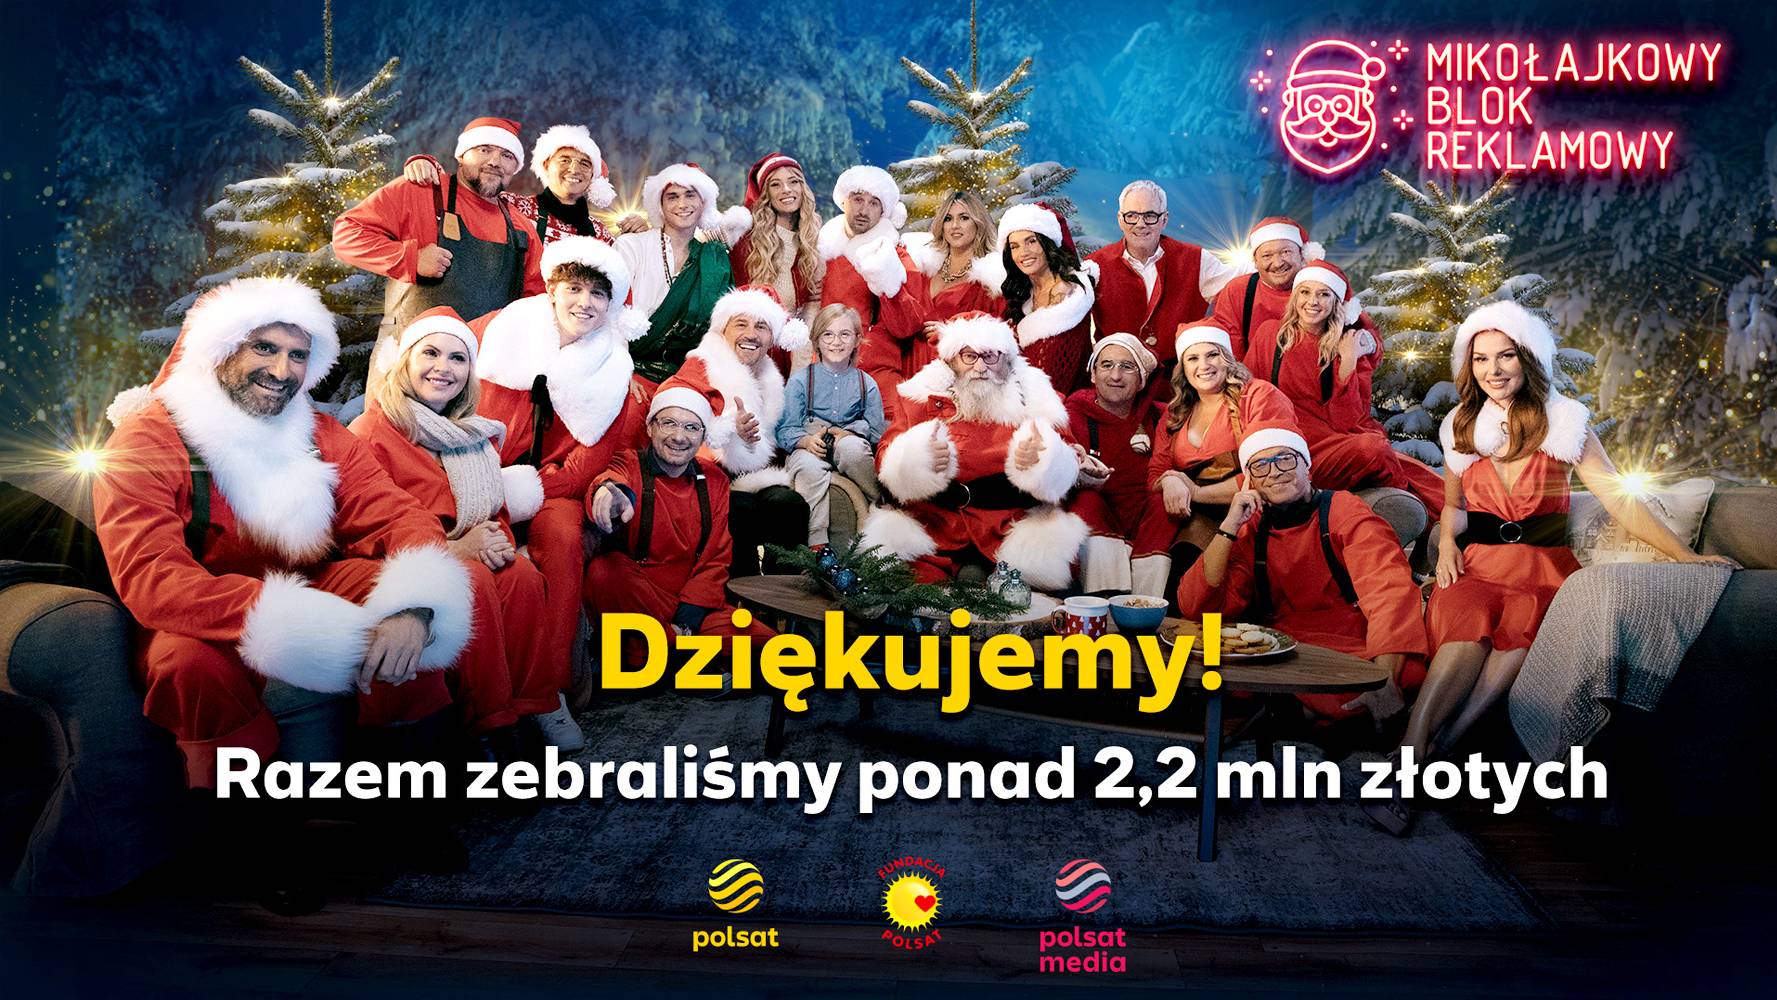 Mikołajkowy Blok Reklamowy 2023. Ponad 2,2 mln złotych! - Polsat.pl